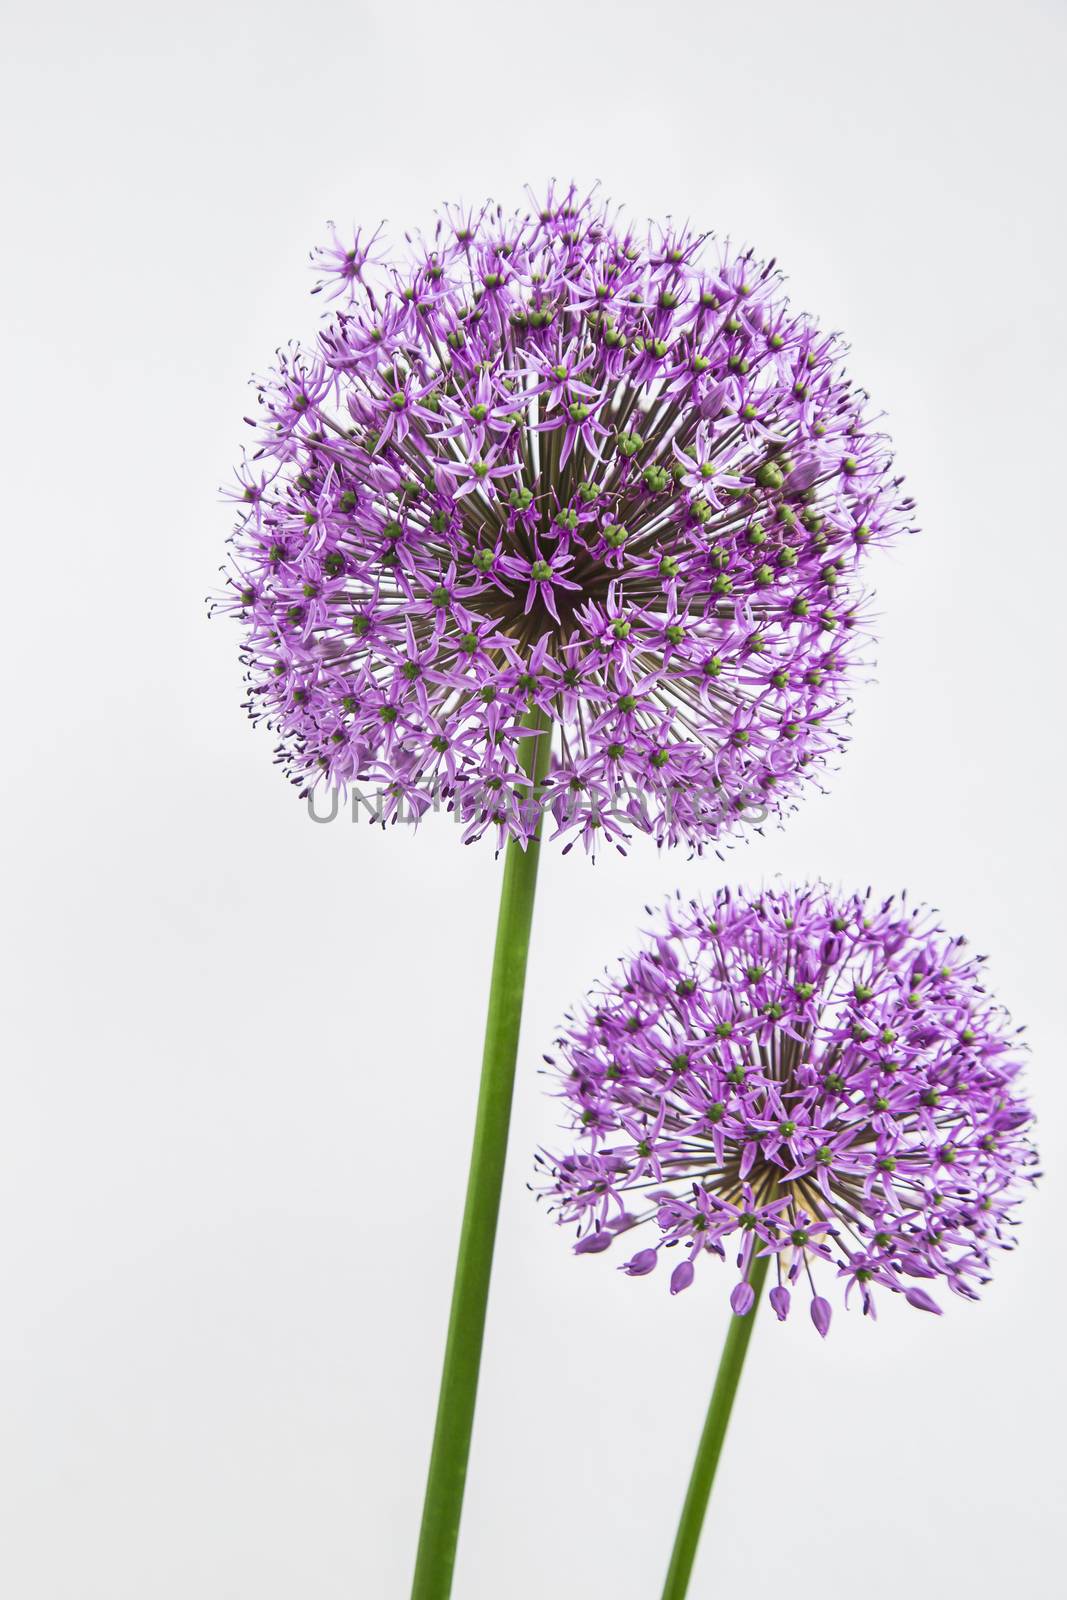 Allium hollandicum by mypstudio